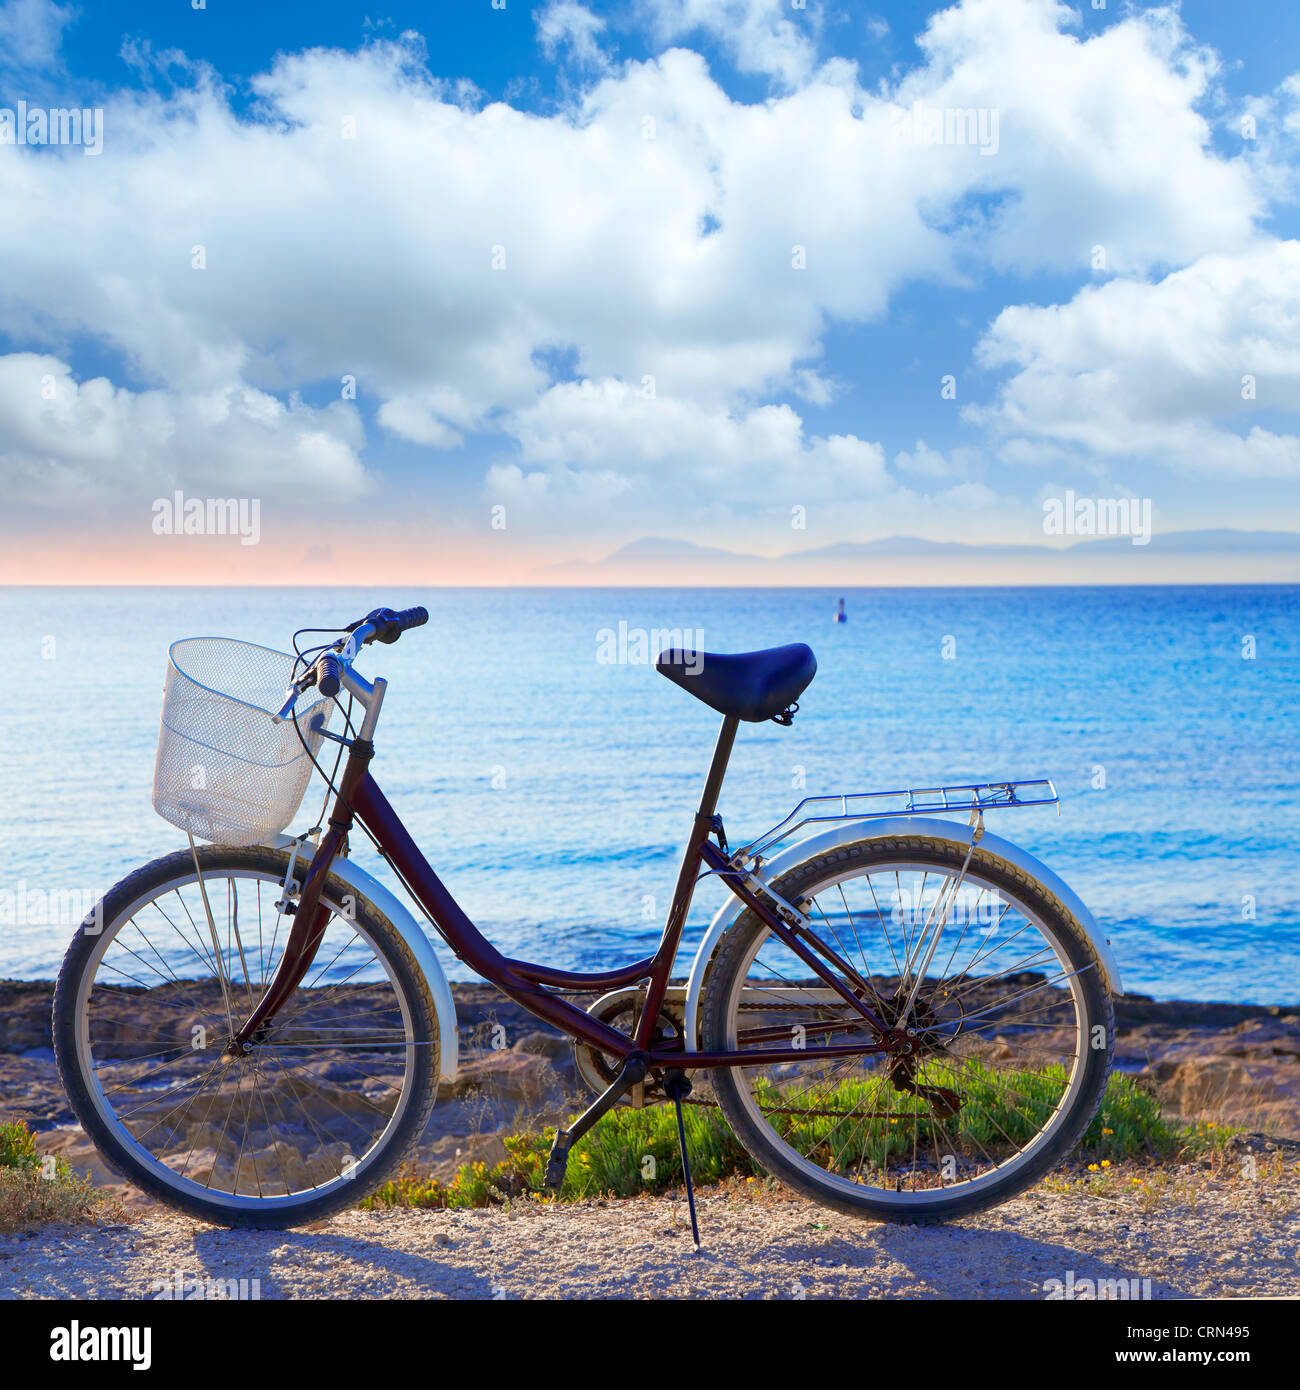 Spain Europe Bike Bicycle Stockfotos und -bilder Kaufen - Alamy